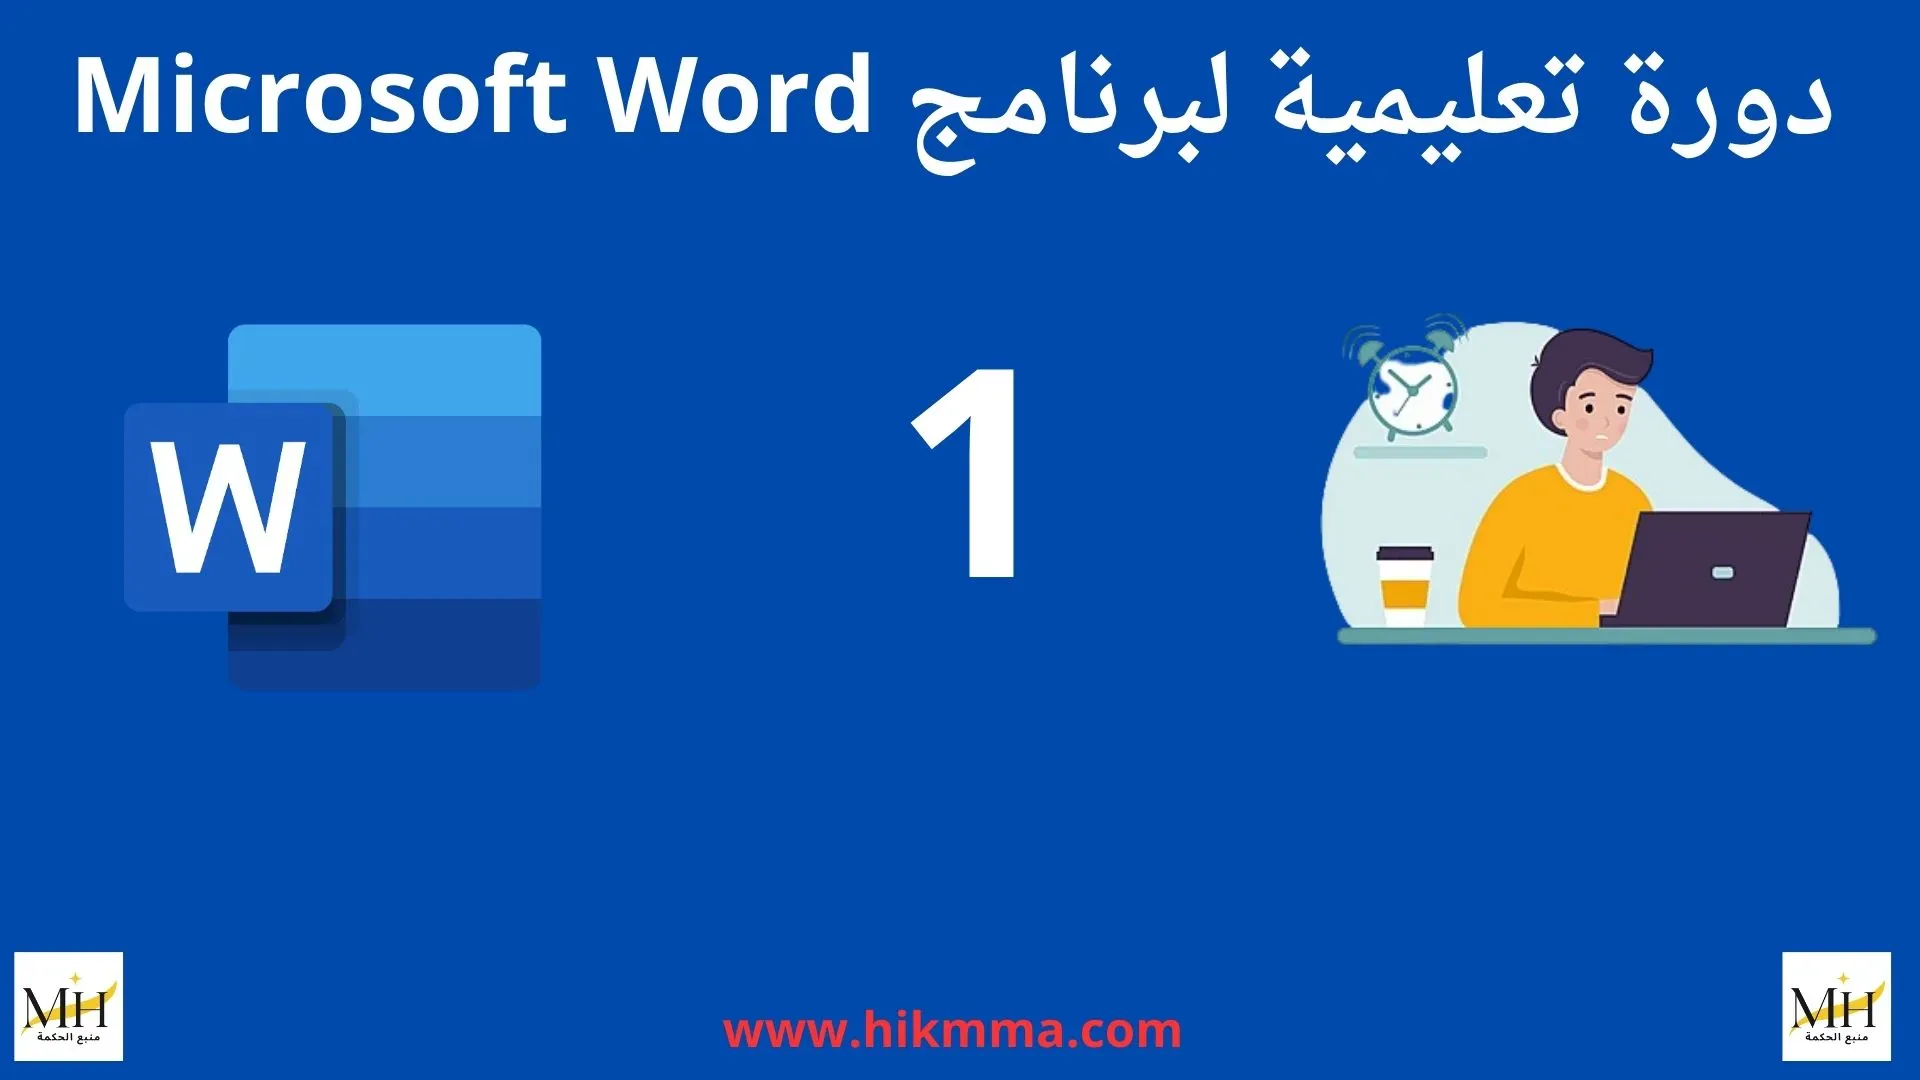 دورة تعليمية لبرنامج ميكروسوفت وورد Microsoft Word